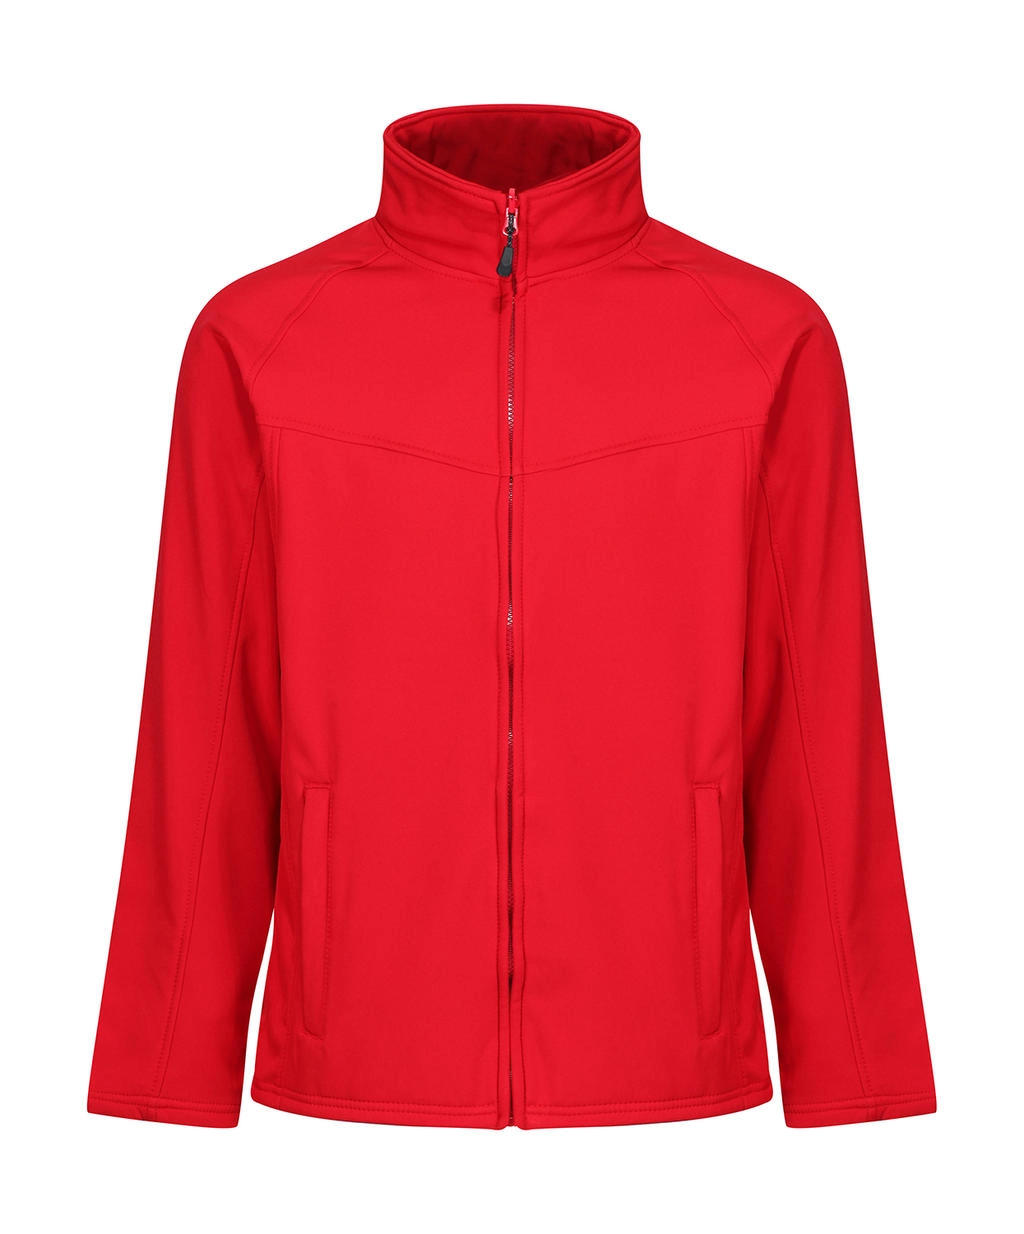 Uproar Softshell Jacket zum Besticken und Bedrucken in der Farbe Classic Red/Seal Grey mit Ihren Logo, Schriftzug oder Motiv.